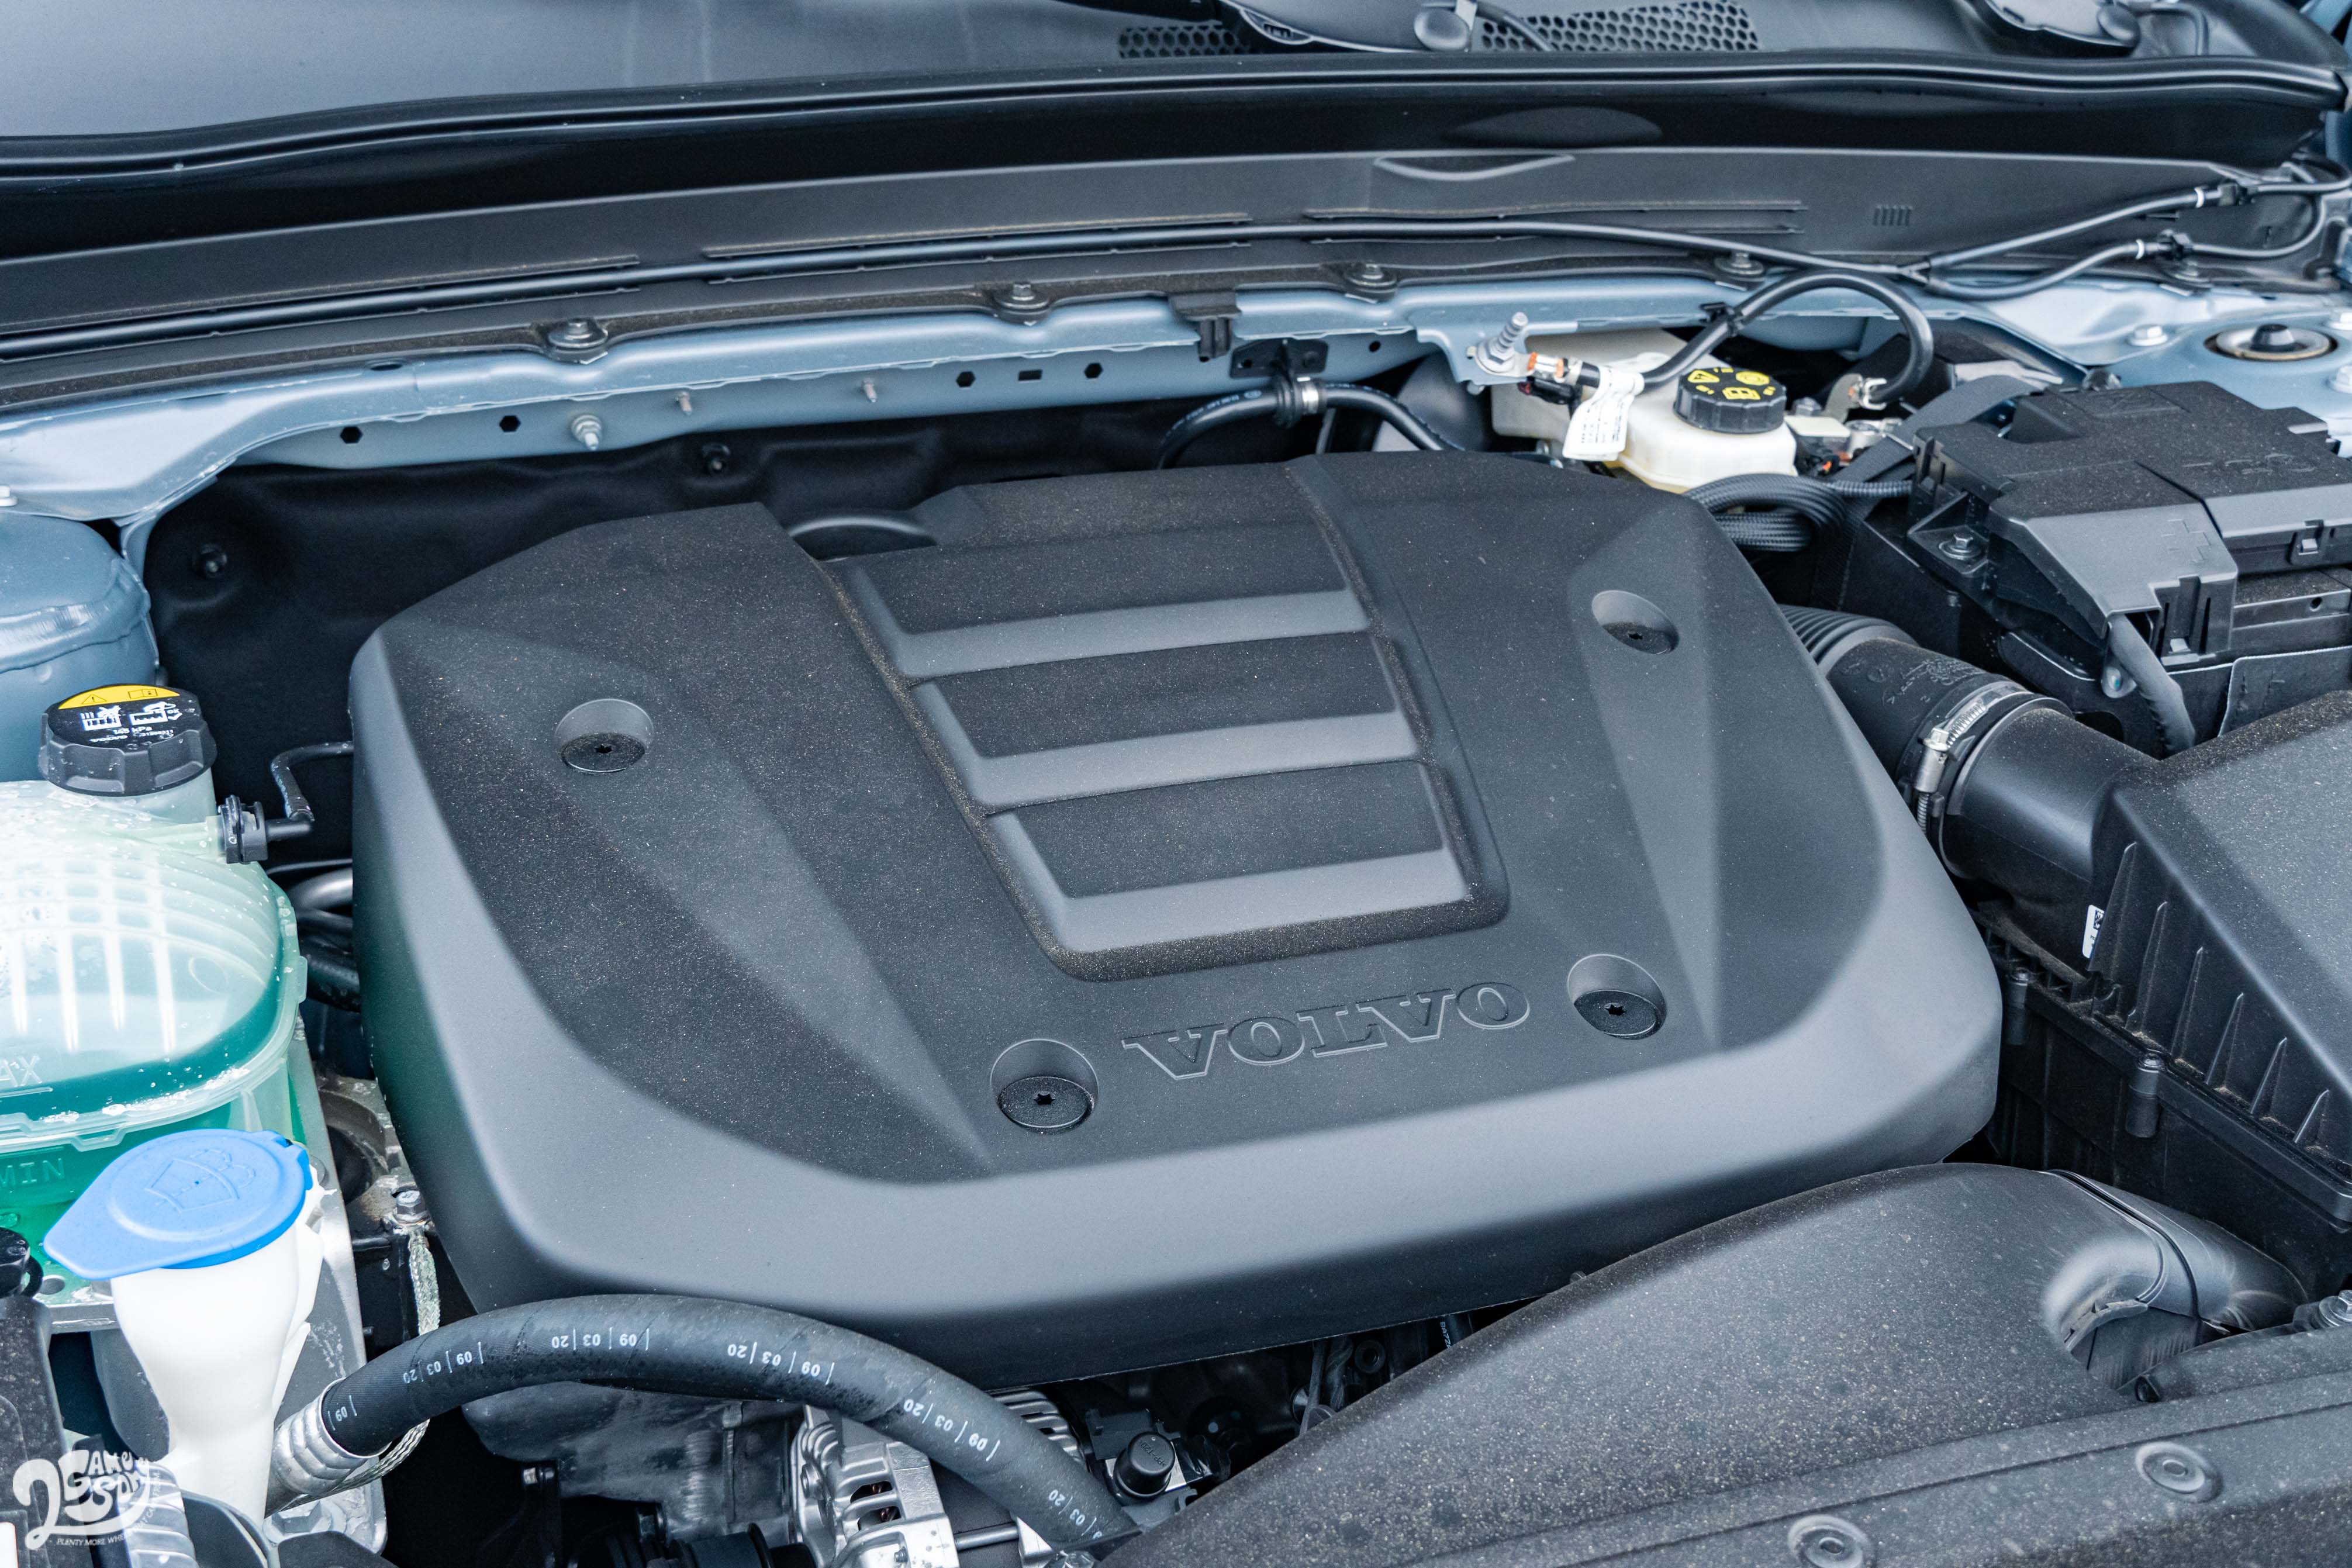 全新 Drive-E 三缸缸內直噴渦輪引擎馬力 163 匹，扭力 27.0 公斤米。